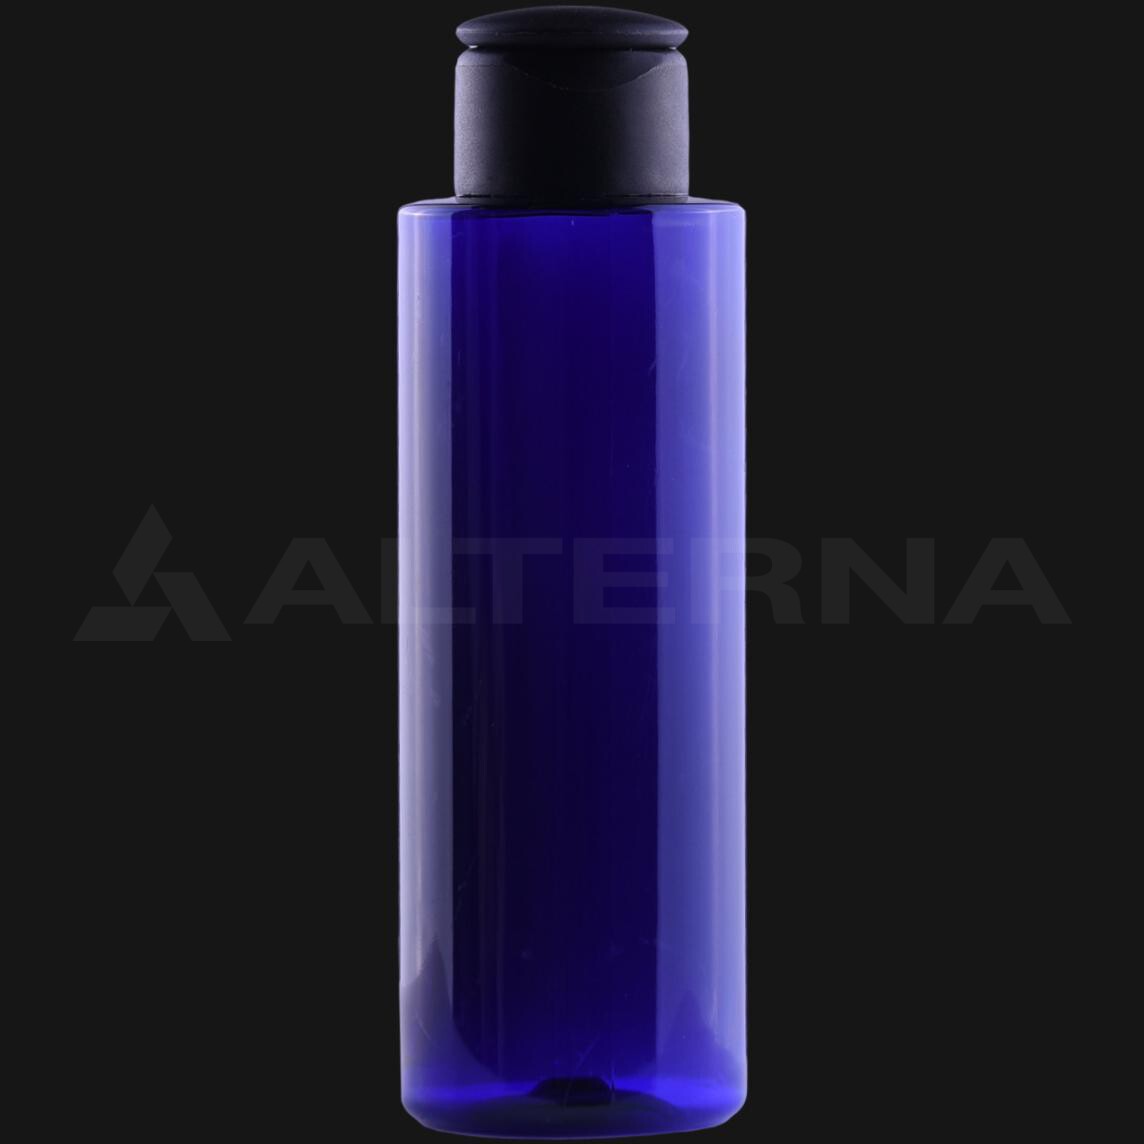 125 ml PET Bottle with 24 mm Flip Top Cap